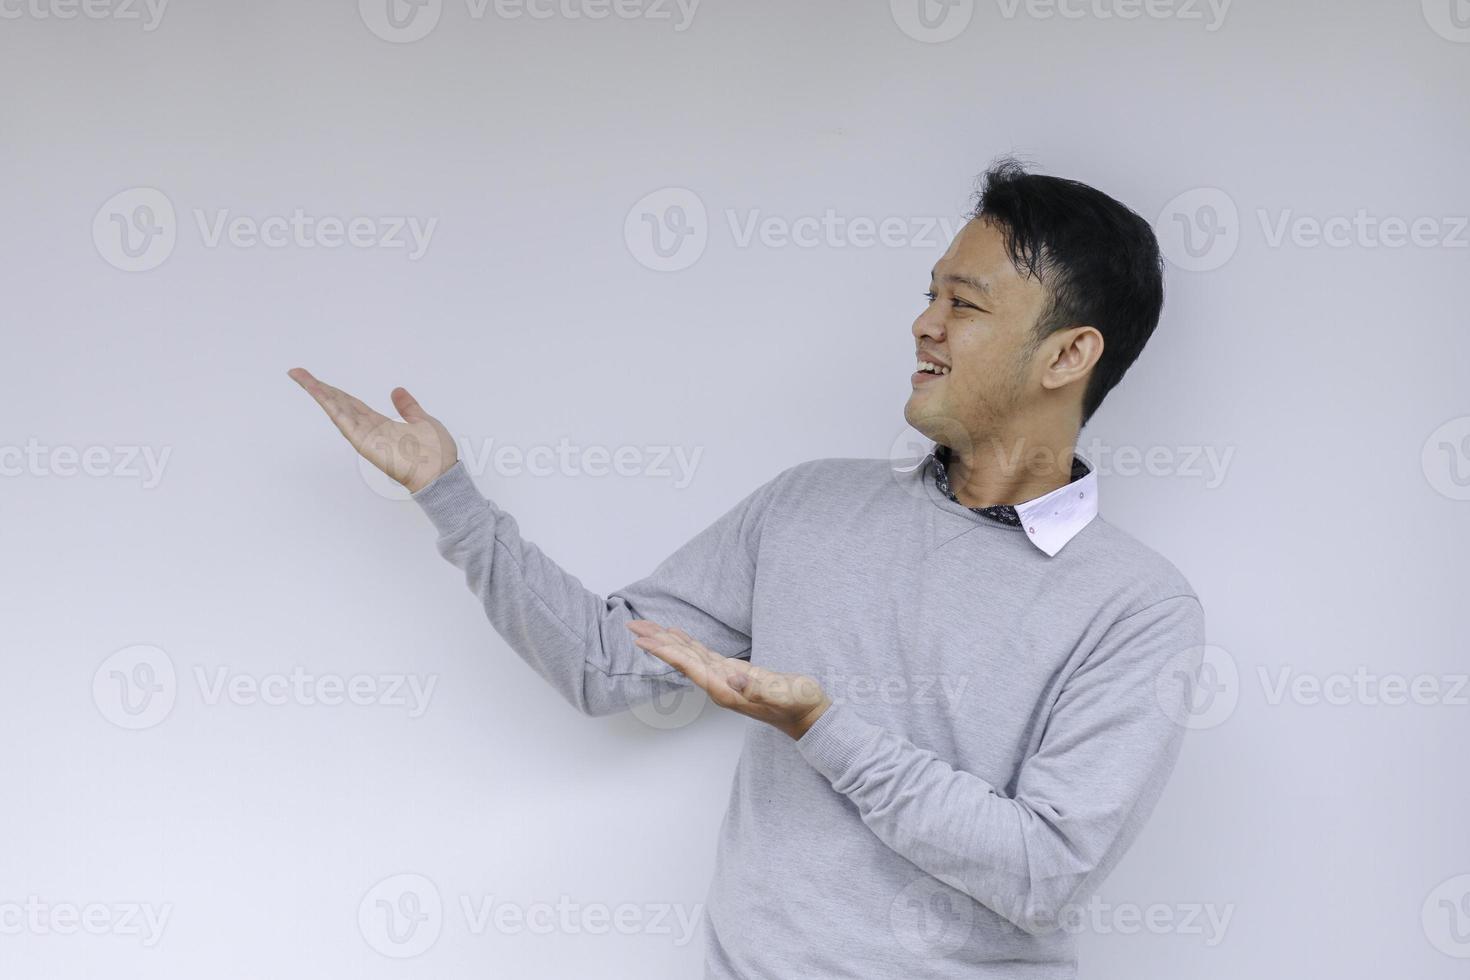 sourire de jeune homme asiatique en chemise blanche avec point de main sur l'espace vide photo